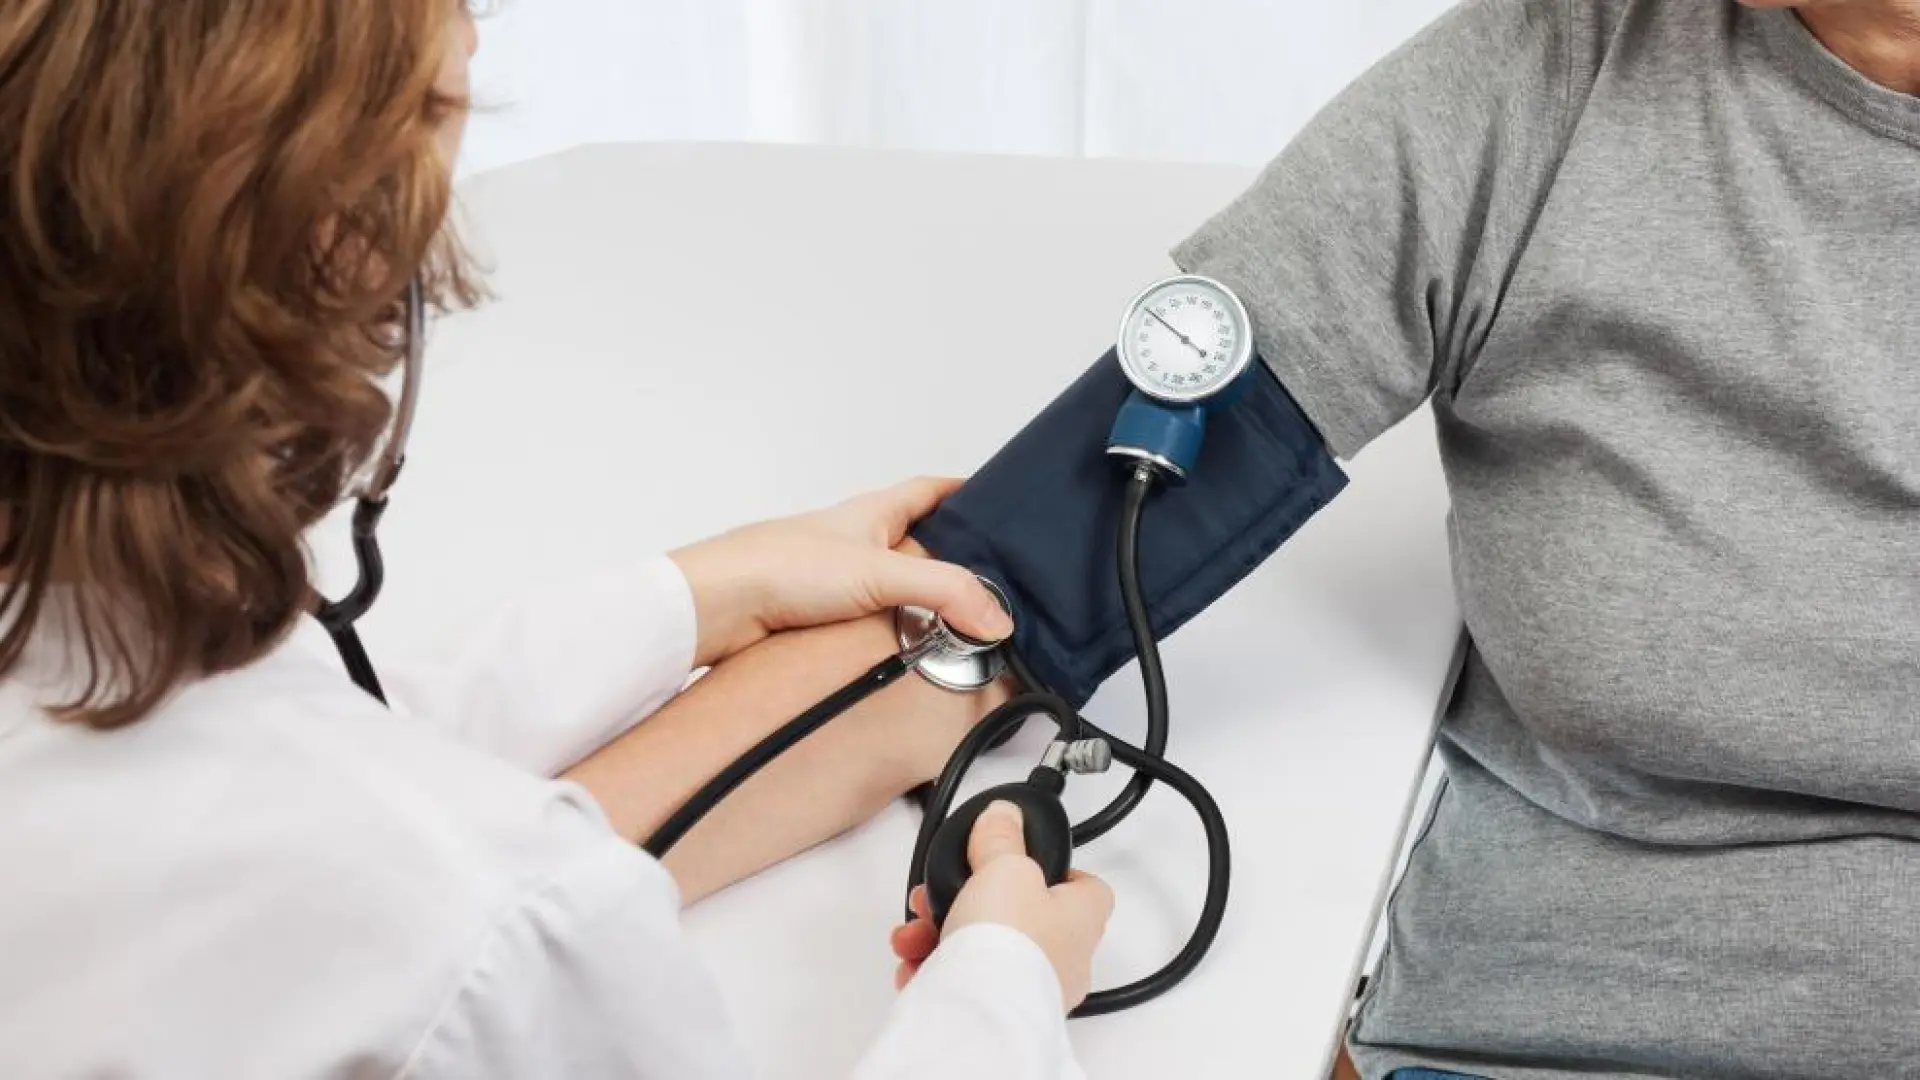 Cuál es la presión arterial normal que debe tener un adulto, según la comunidad médica